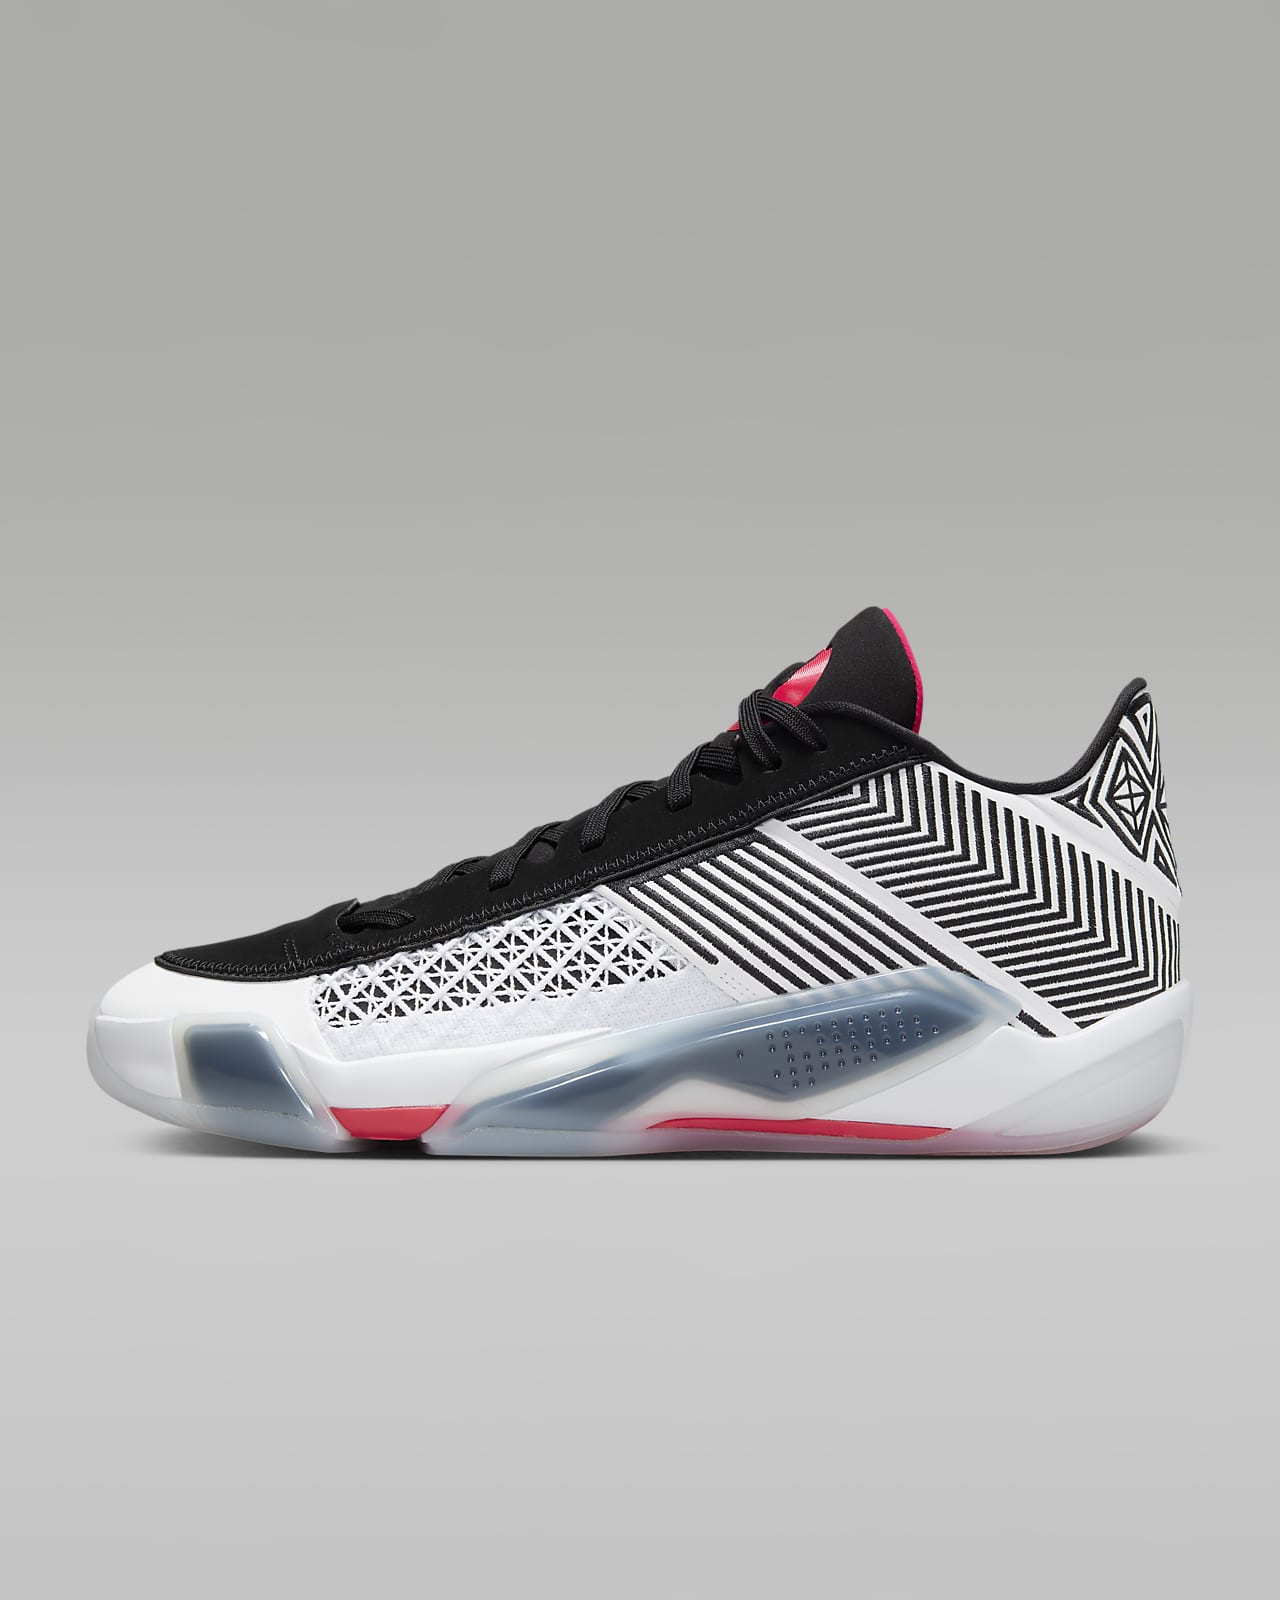 Jordan XXXVIII V1 Basketball Shoes